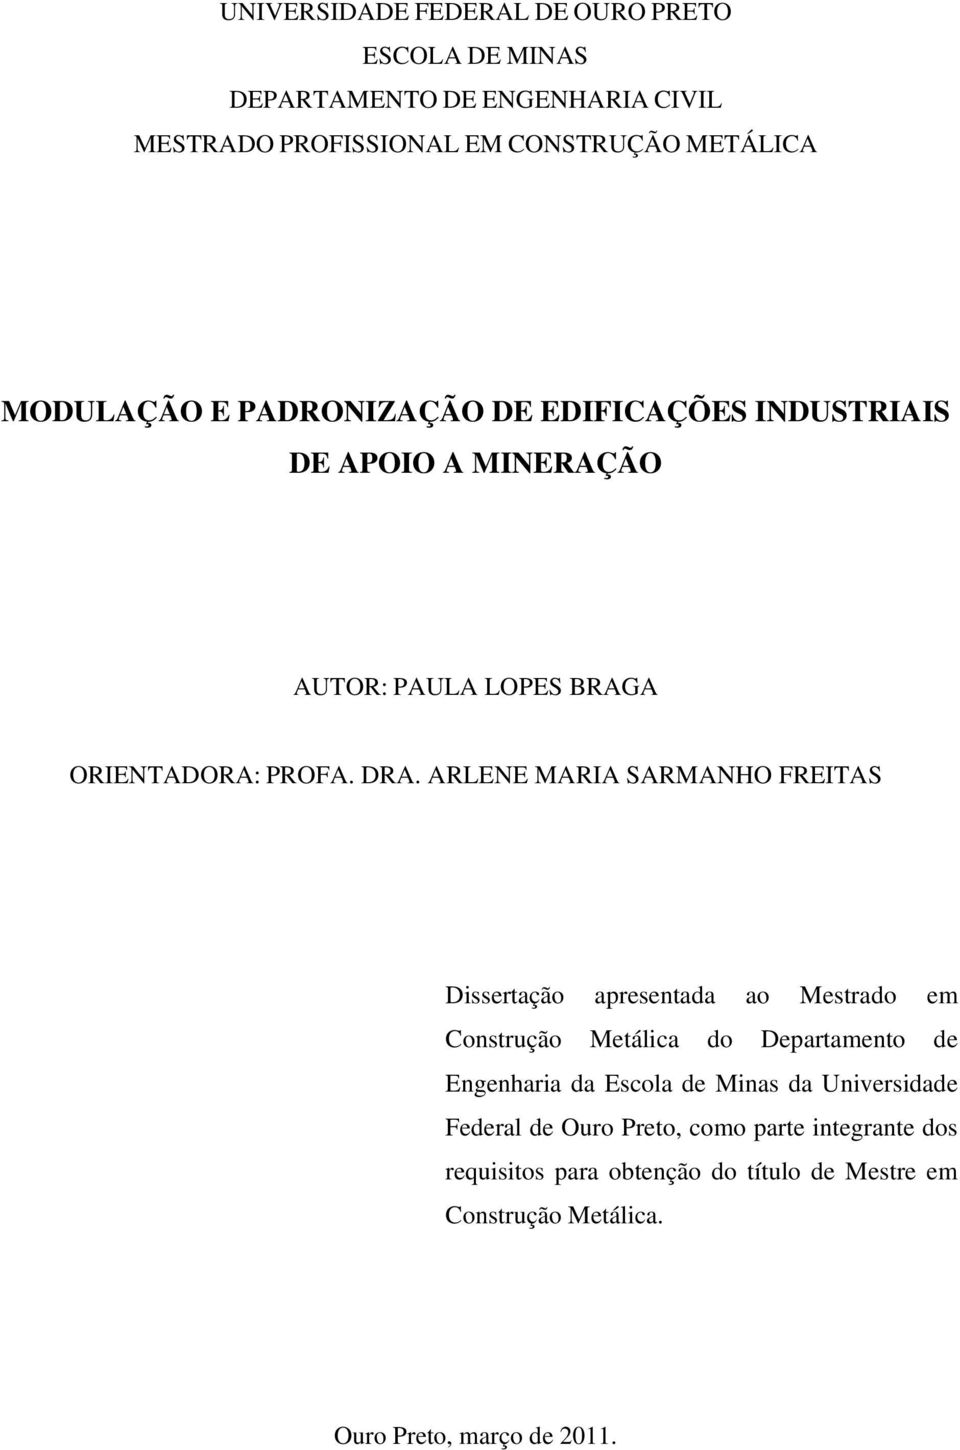 ARLENE MARIA SARMANHO FREITAS Dissertação apresentada ao Mestrado em Construção Metálica do Departamento de Engenharia da Escola de Minas